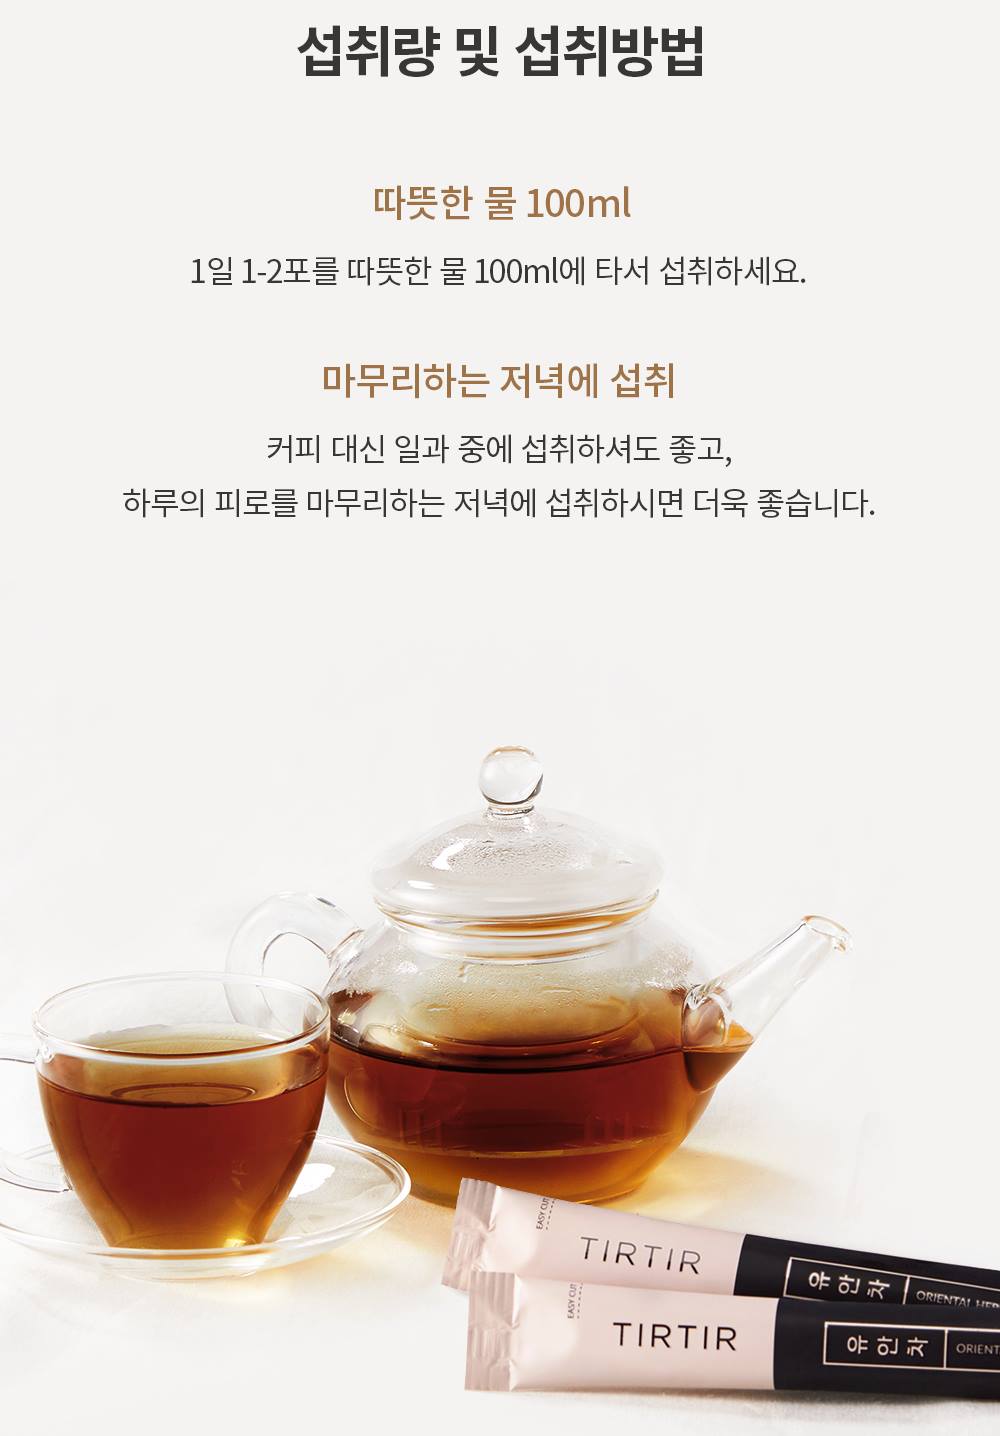 TIRTIR Oriental Herb Tea 10g x 30sticks Korea Health supplements